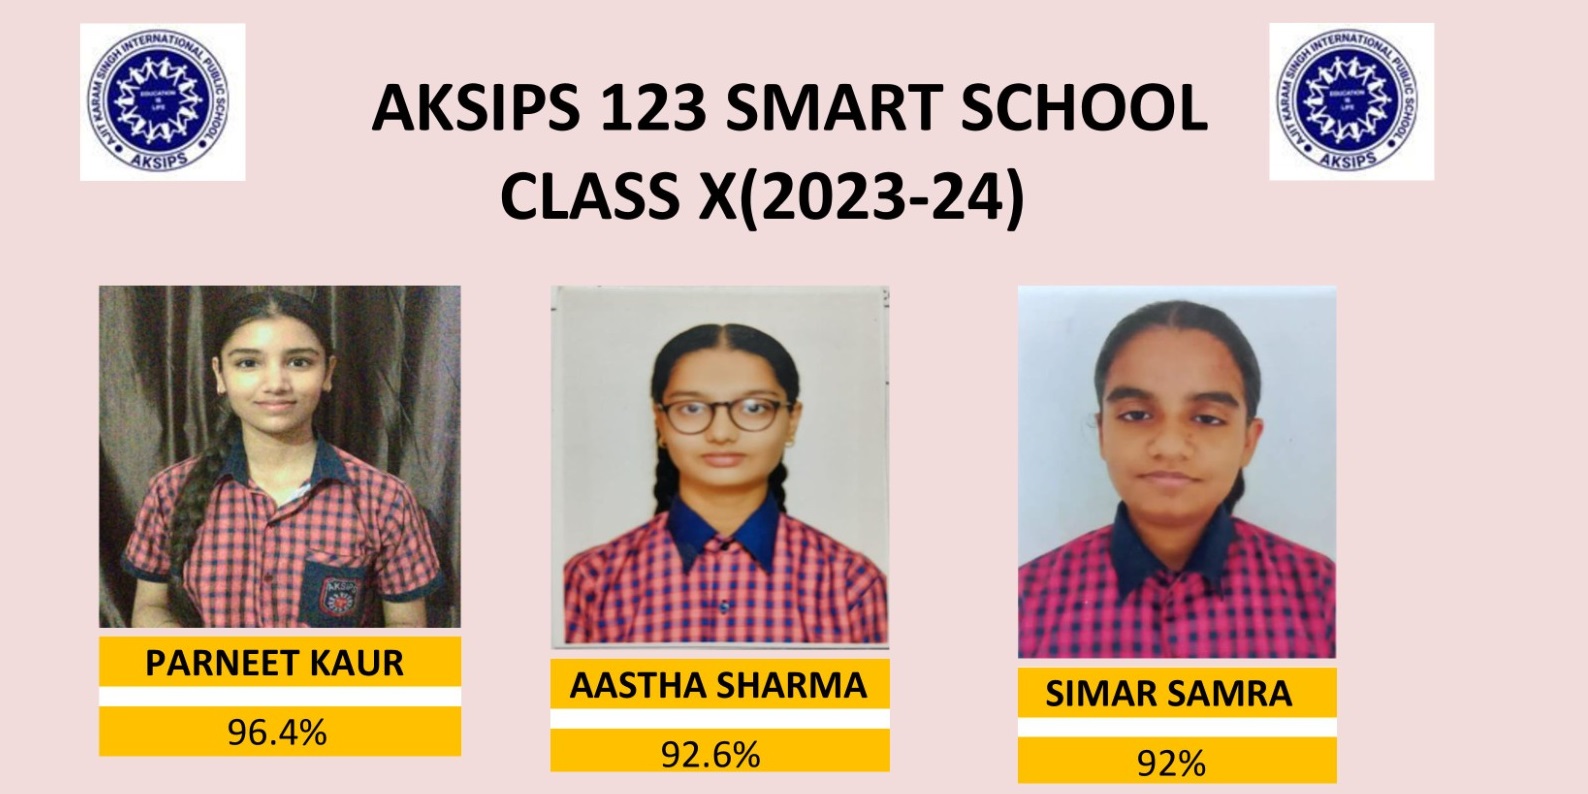 Aksips123 Smart School